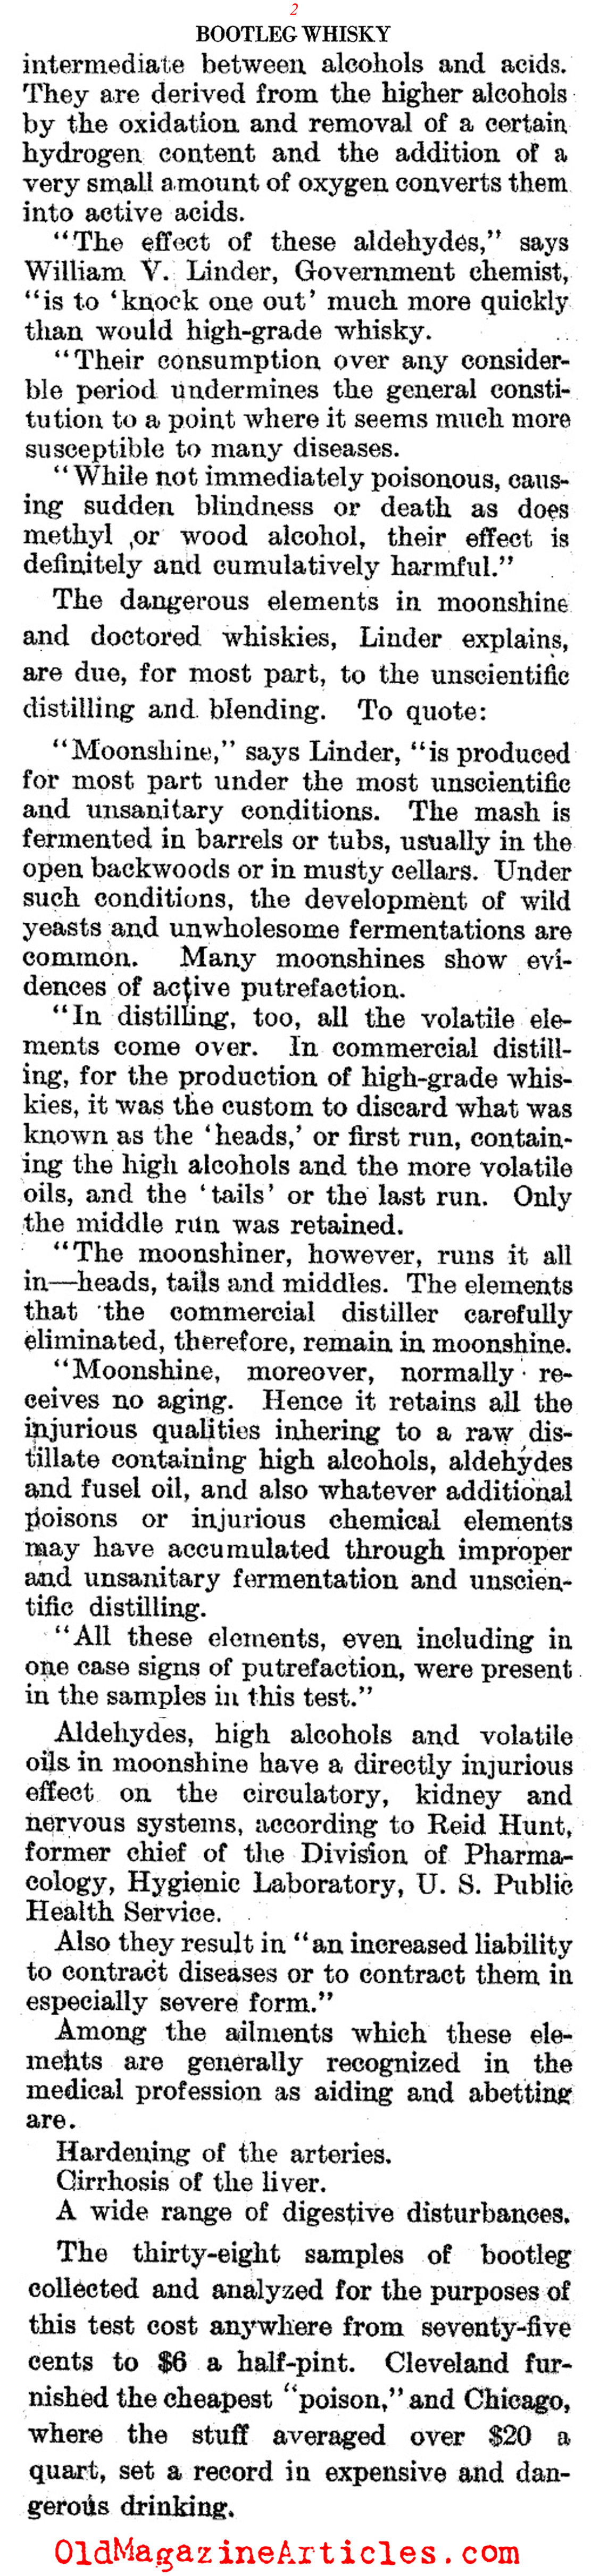 Bootleg Whiskey as Poisoner (Literary Digest, 1922)